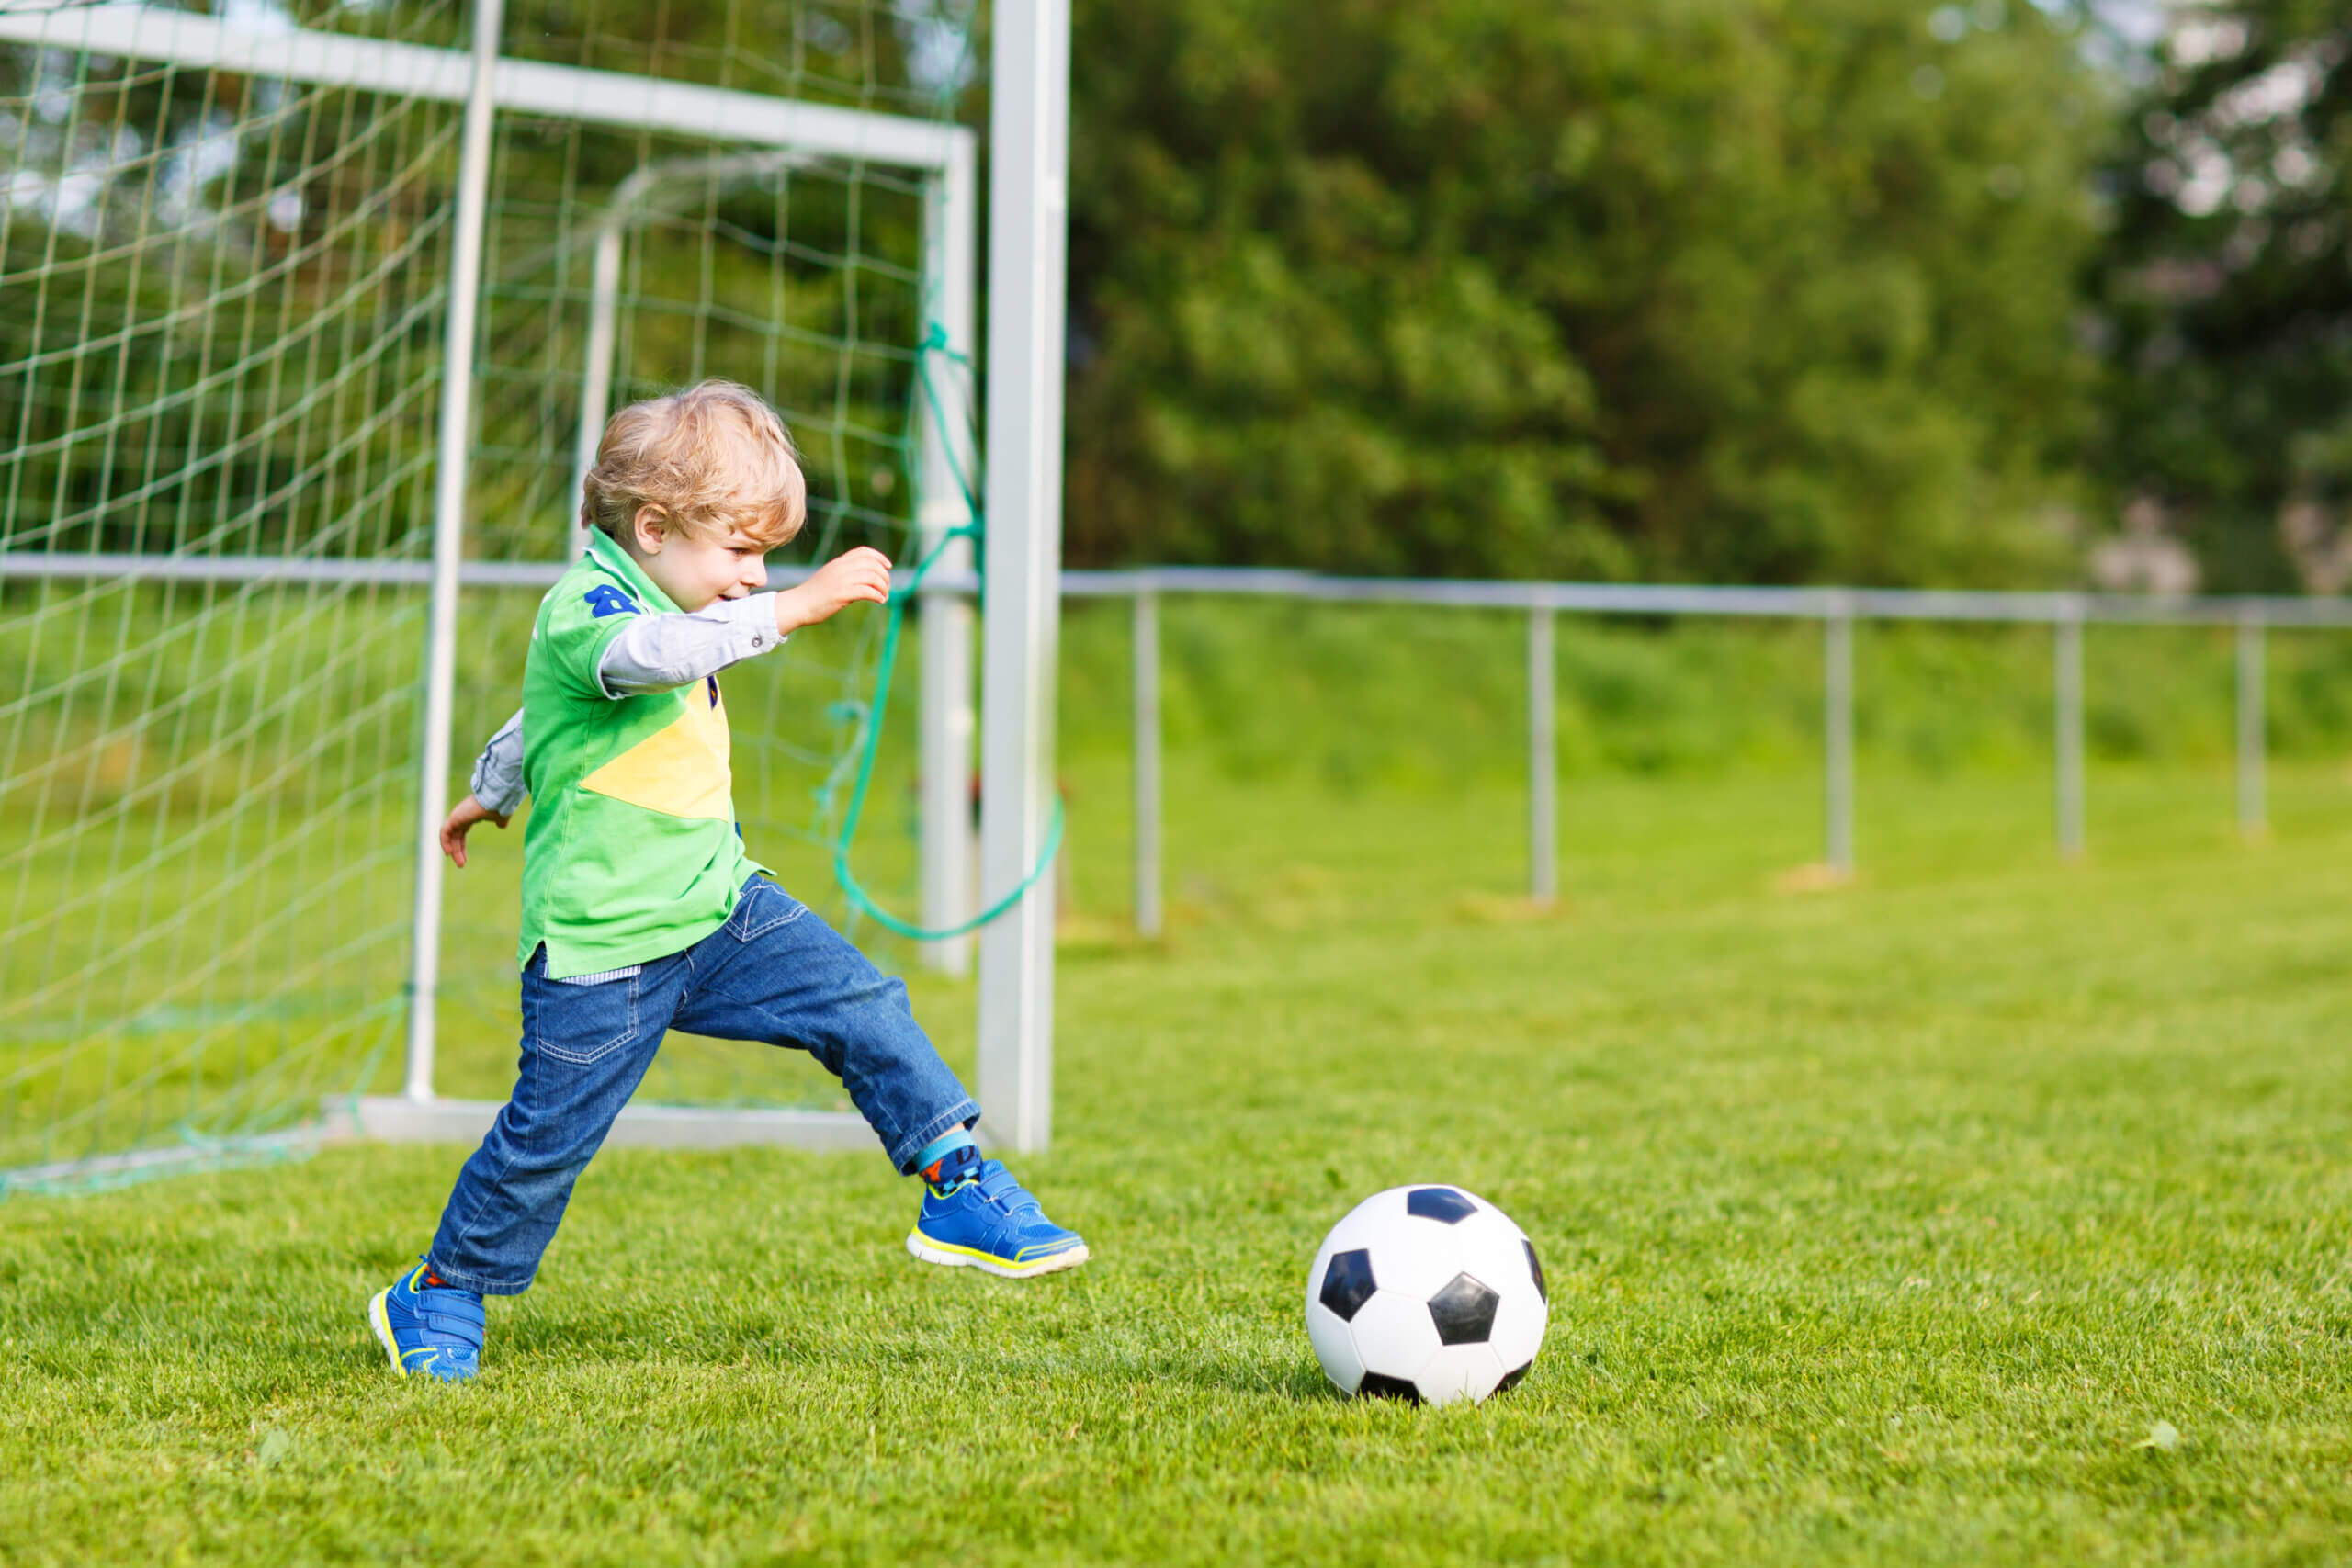 Actividades físicas en niños pequeños